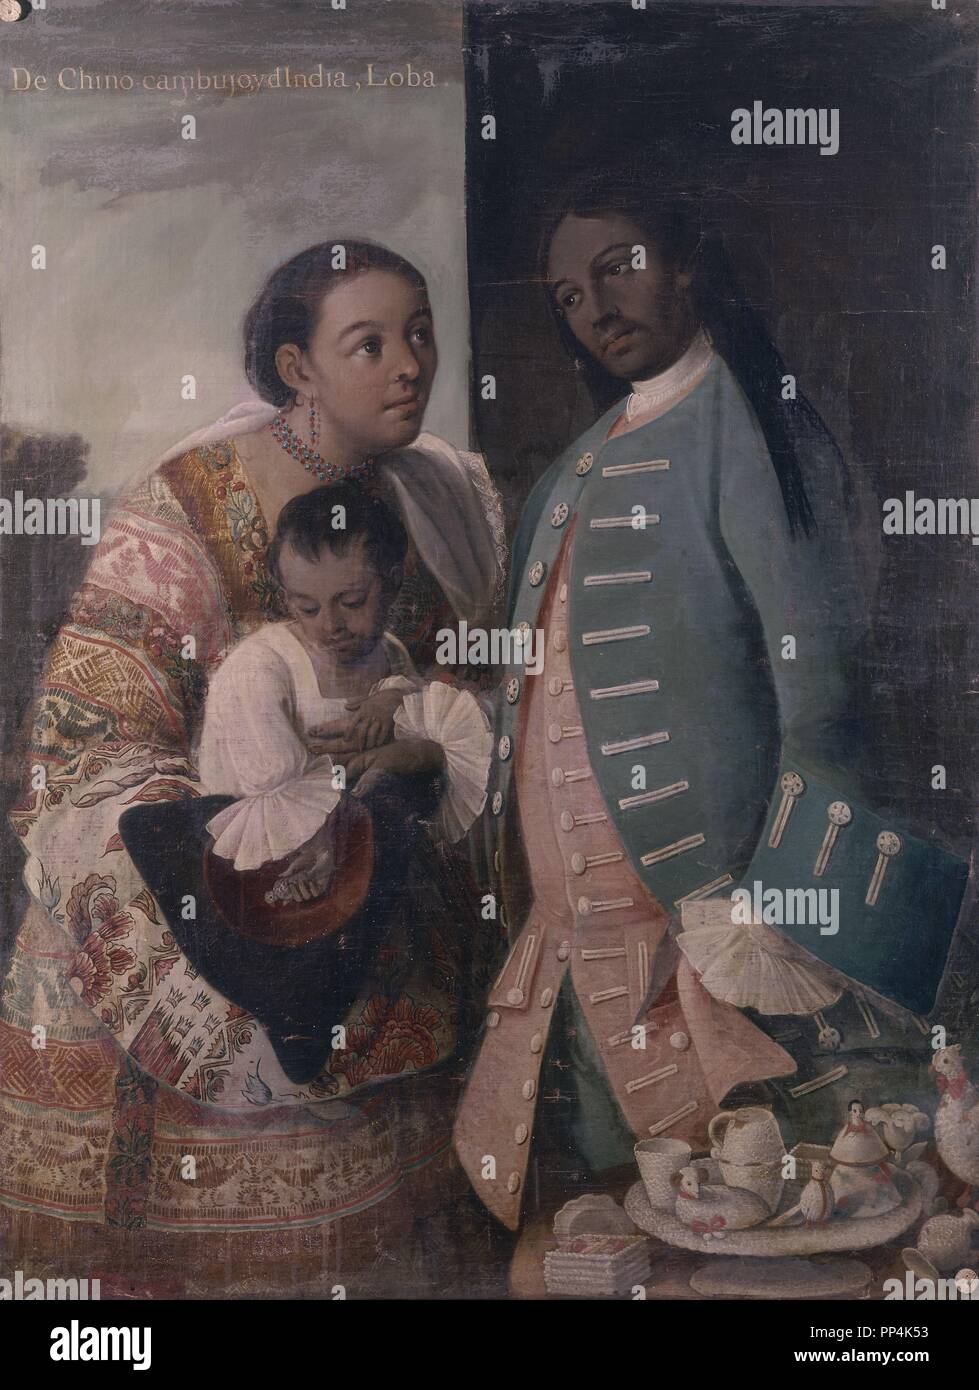 El mestizaje - DE CHINO CAMBUJO E INDIA : LOBA - México - 1763. Autor: CABRERA, Miguel. Ubicación: MUSEO DE AMÉRICA-COLECCION. MADRID. España. Foto de stock